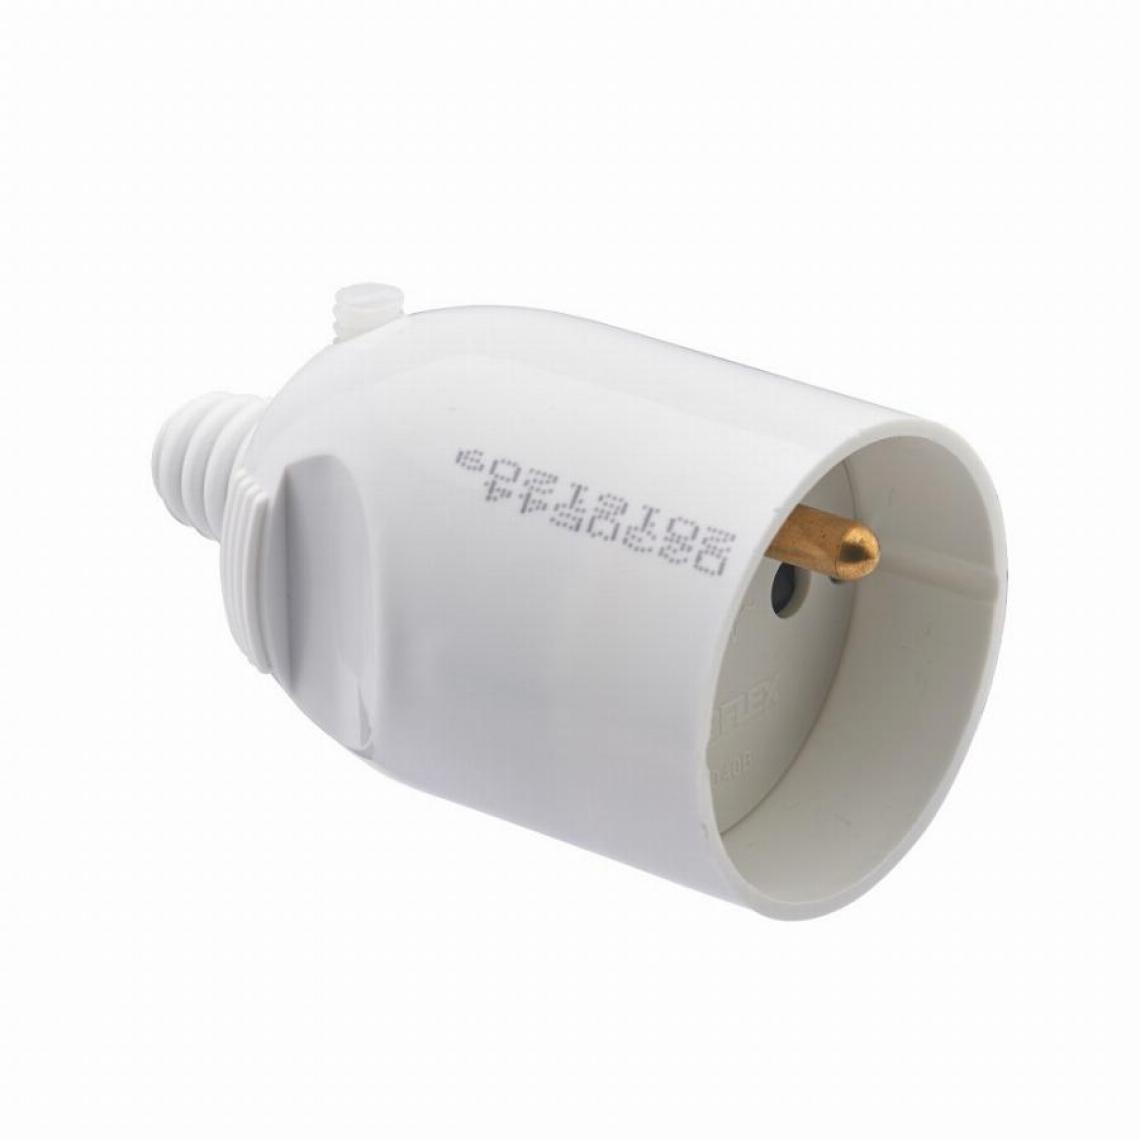 Debflex - Fiche femelle 2P+T 16 ampères sortie câble droite ouverture à coiffe DEBFLEX Blanc - 713710 - Interrupteurs et prises en saillie